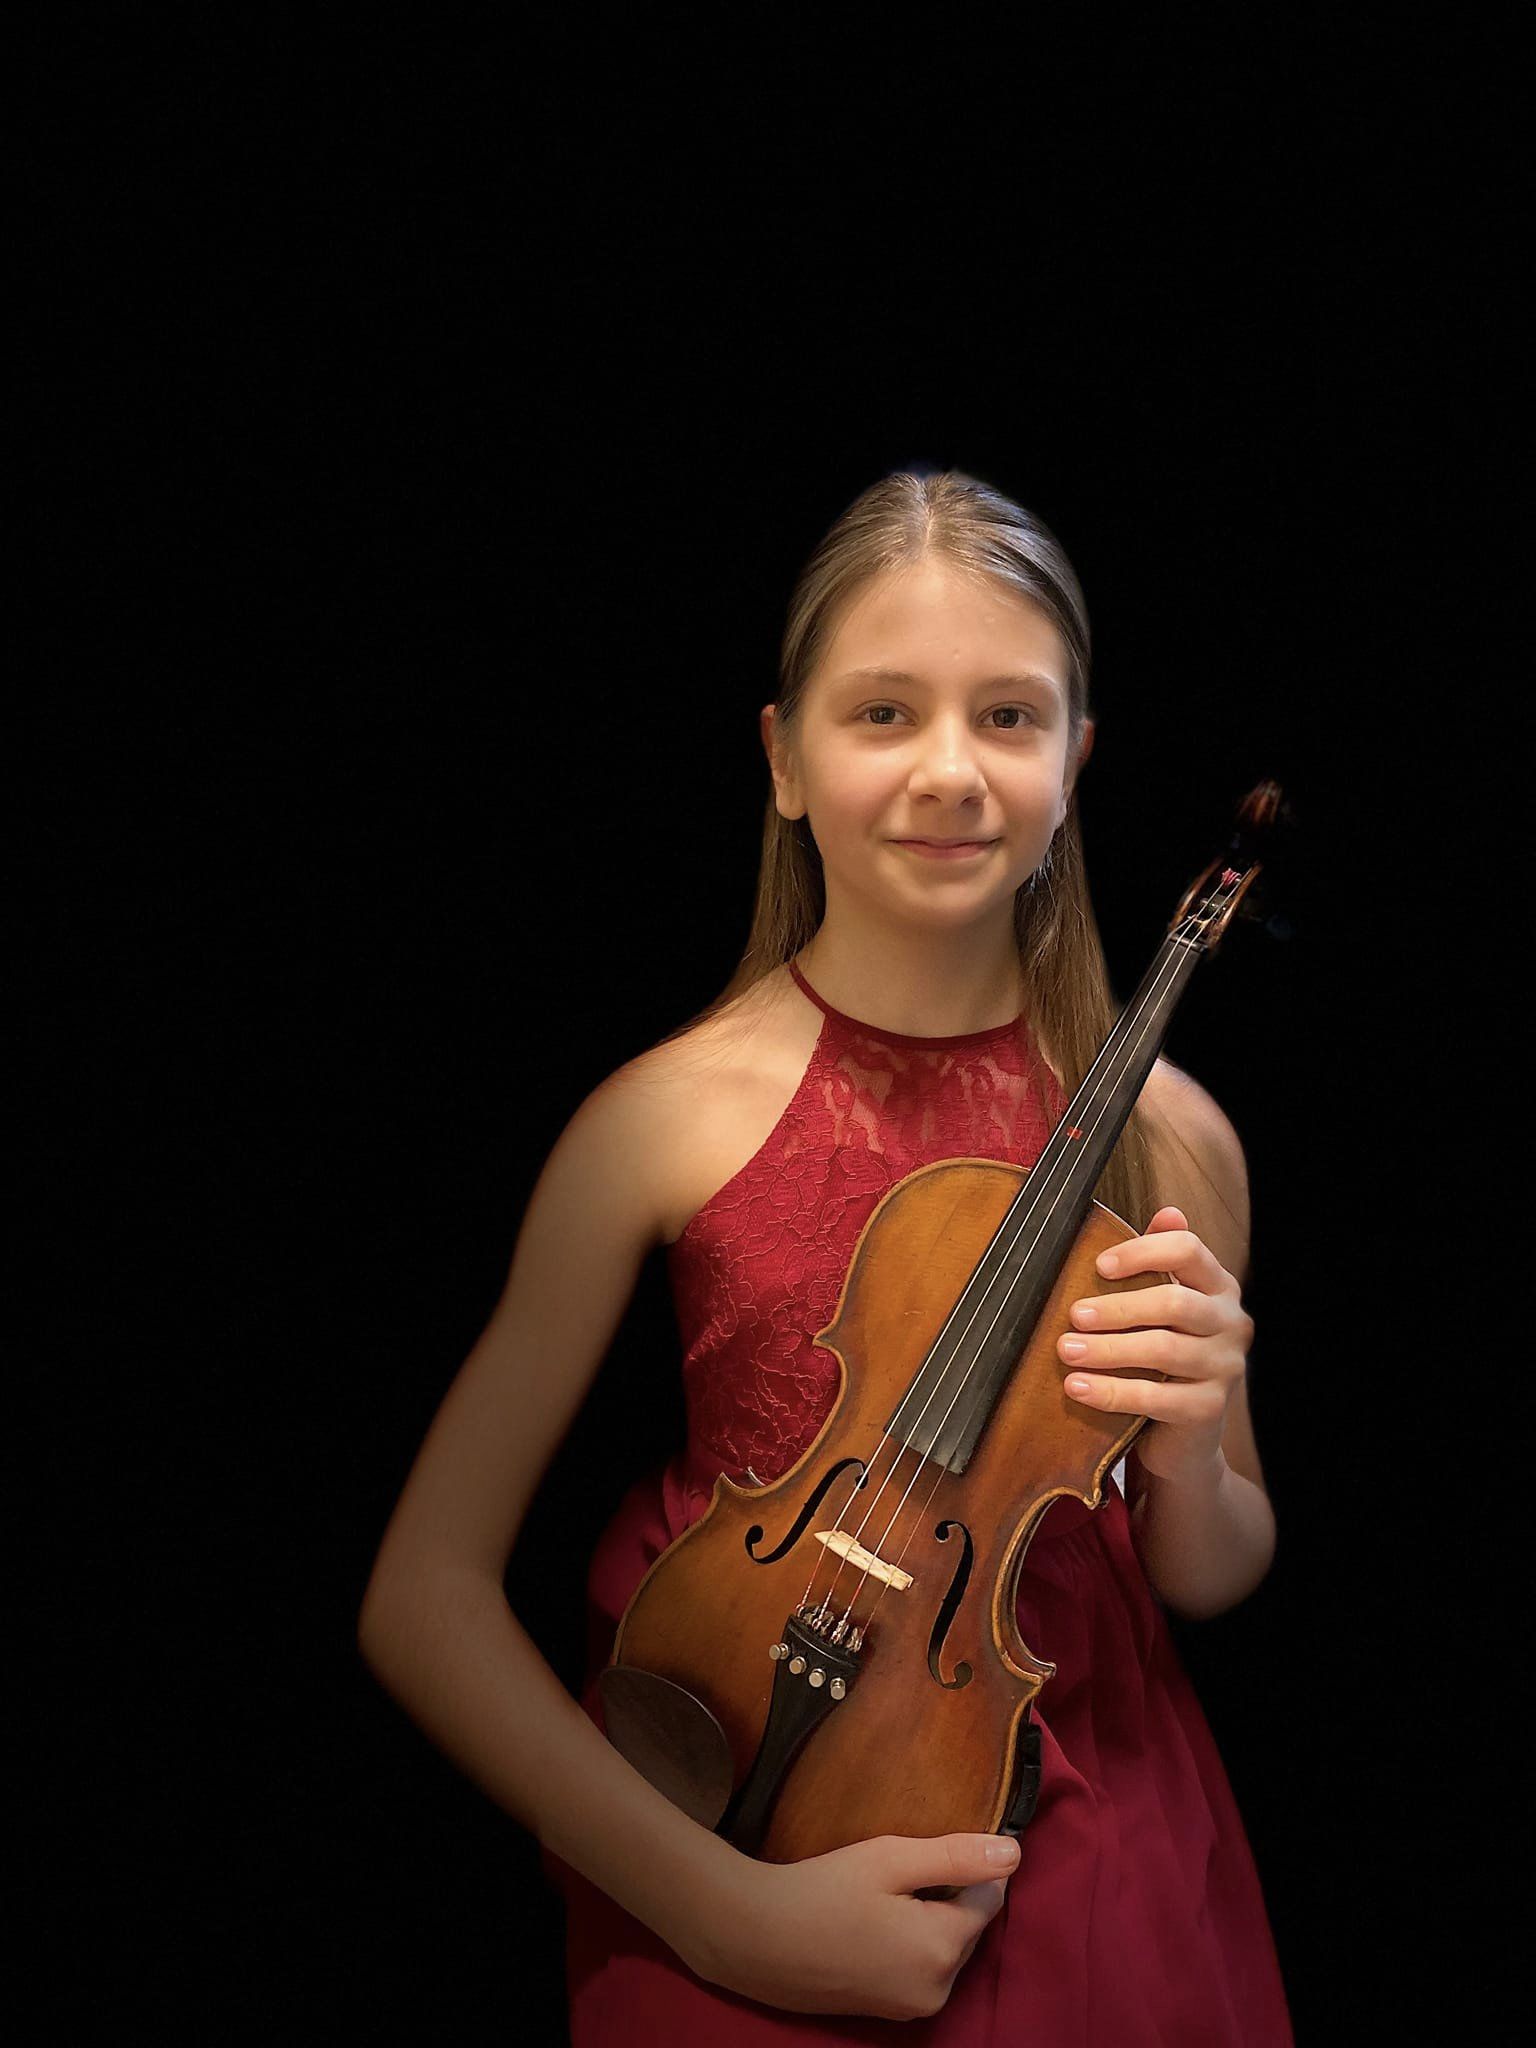 Na zdjęciu znajduje się uśmiechnięta dziewczynka w czerwonej sukience, w rękach trzyma skrzypce. 